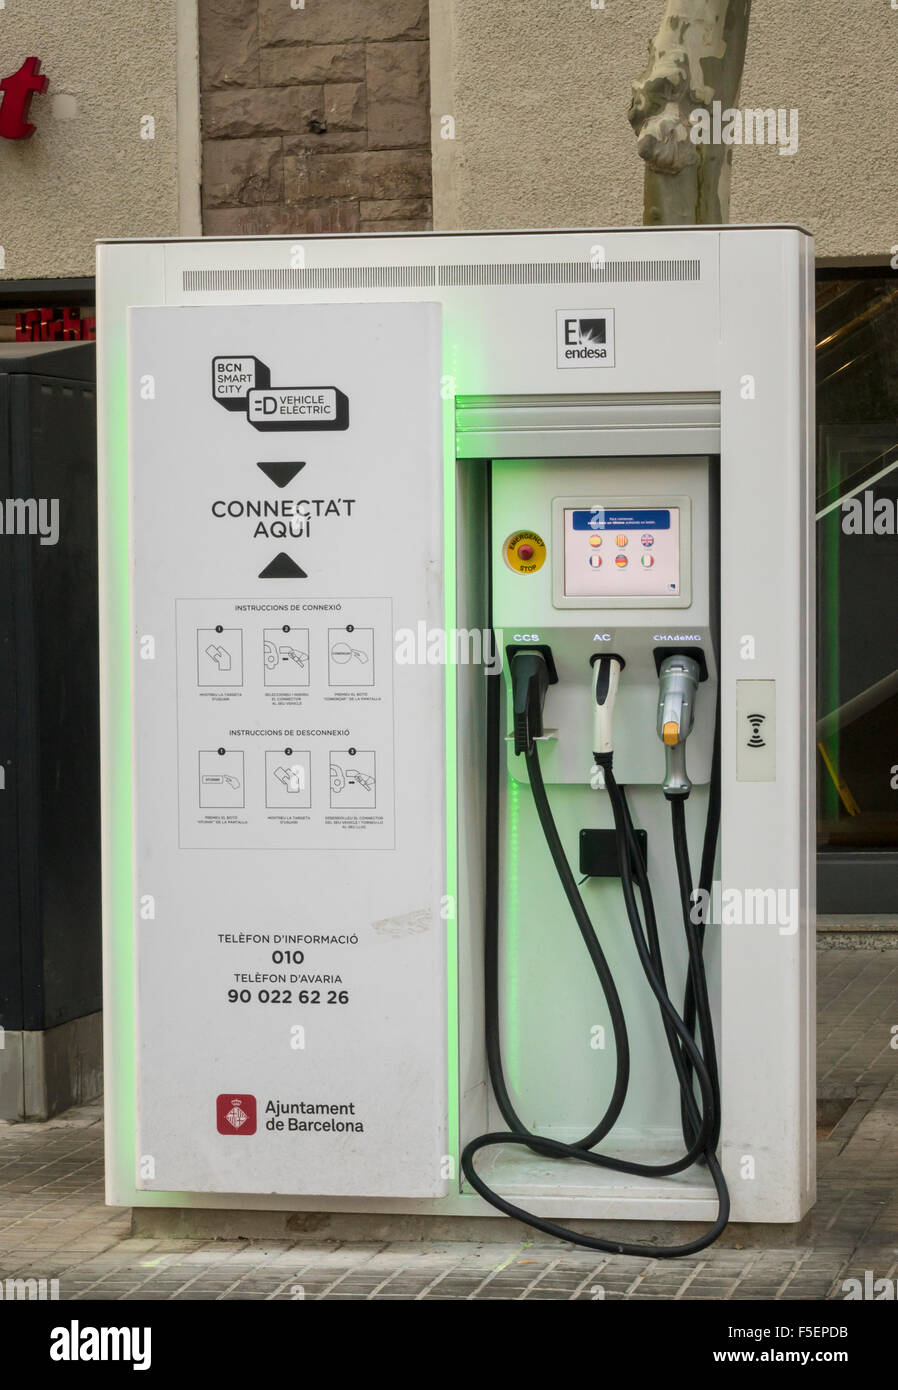 Point de recharge de véhicules électriques gare de Barcelone, Espagne Banque D'Images